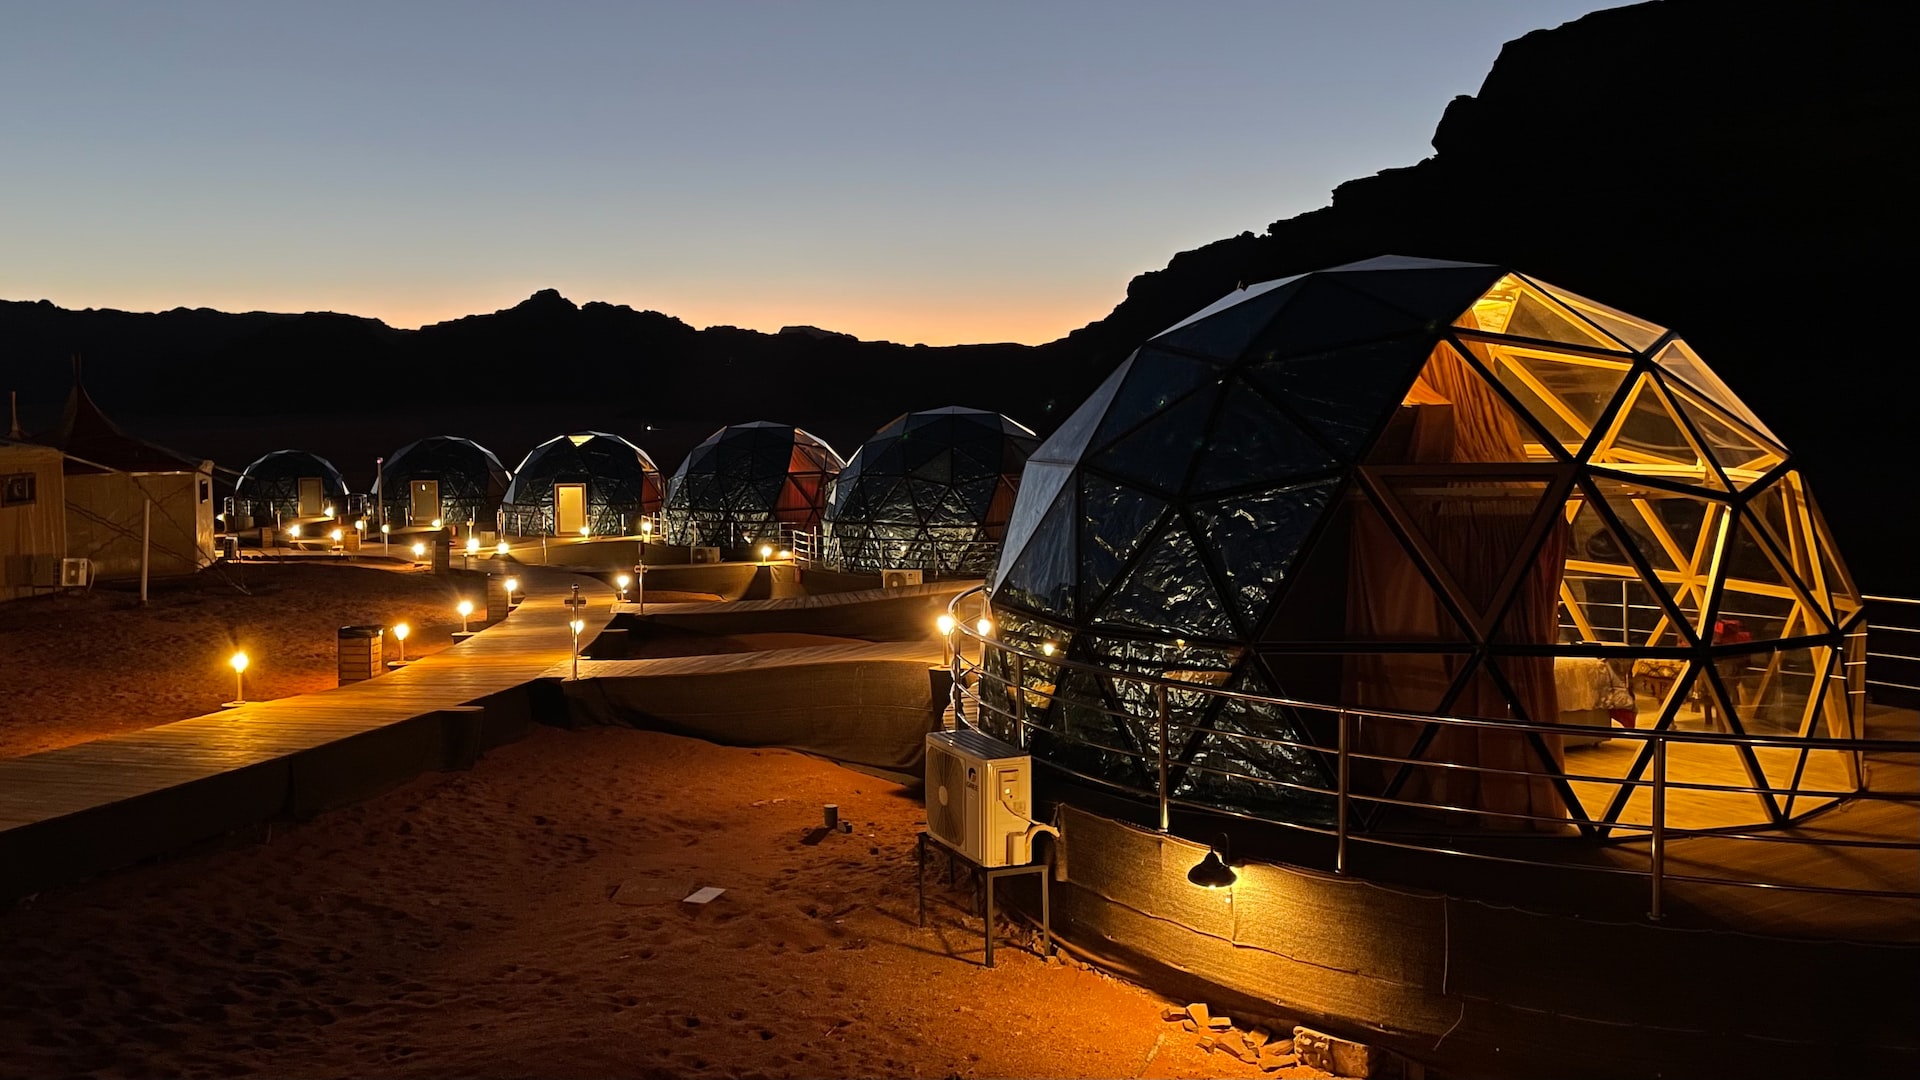 Wadi Rum Camping- Bubble Tents at night